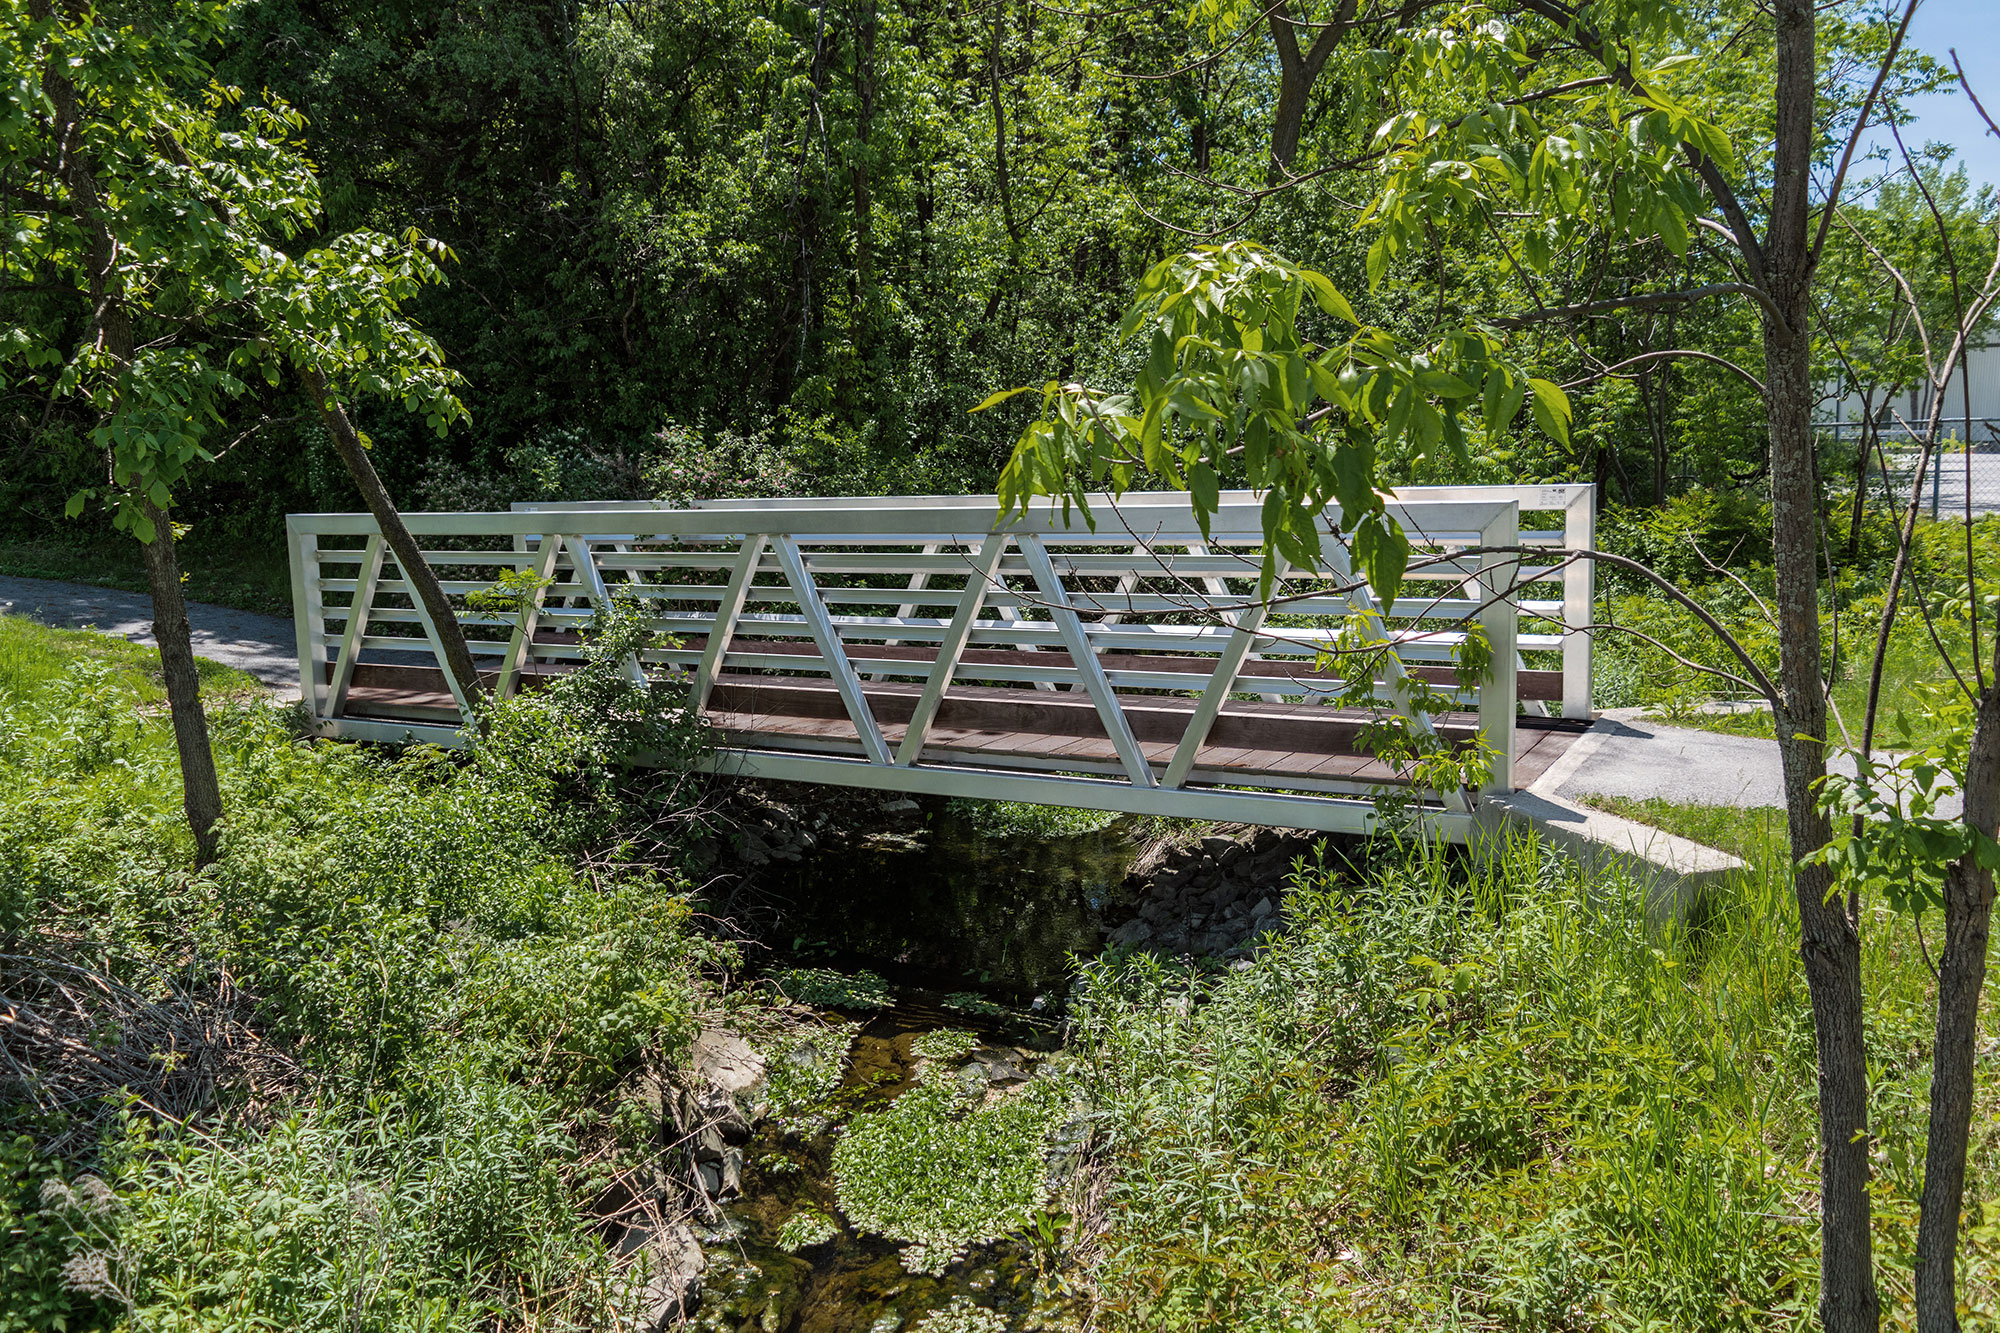 Custom aluminum footbridge for ATVs crossing over creek in Quebec, Canada